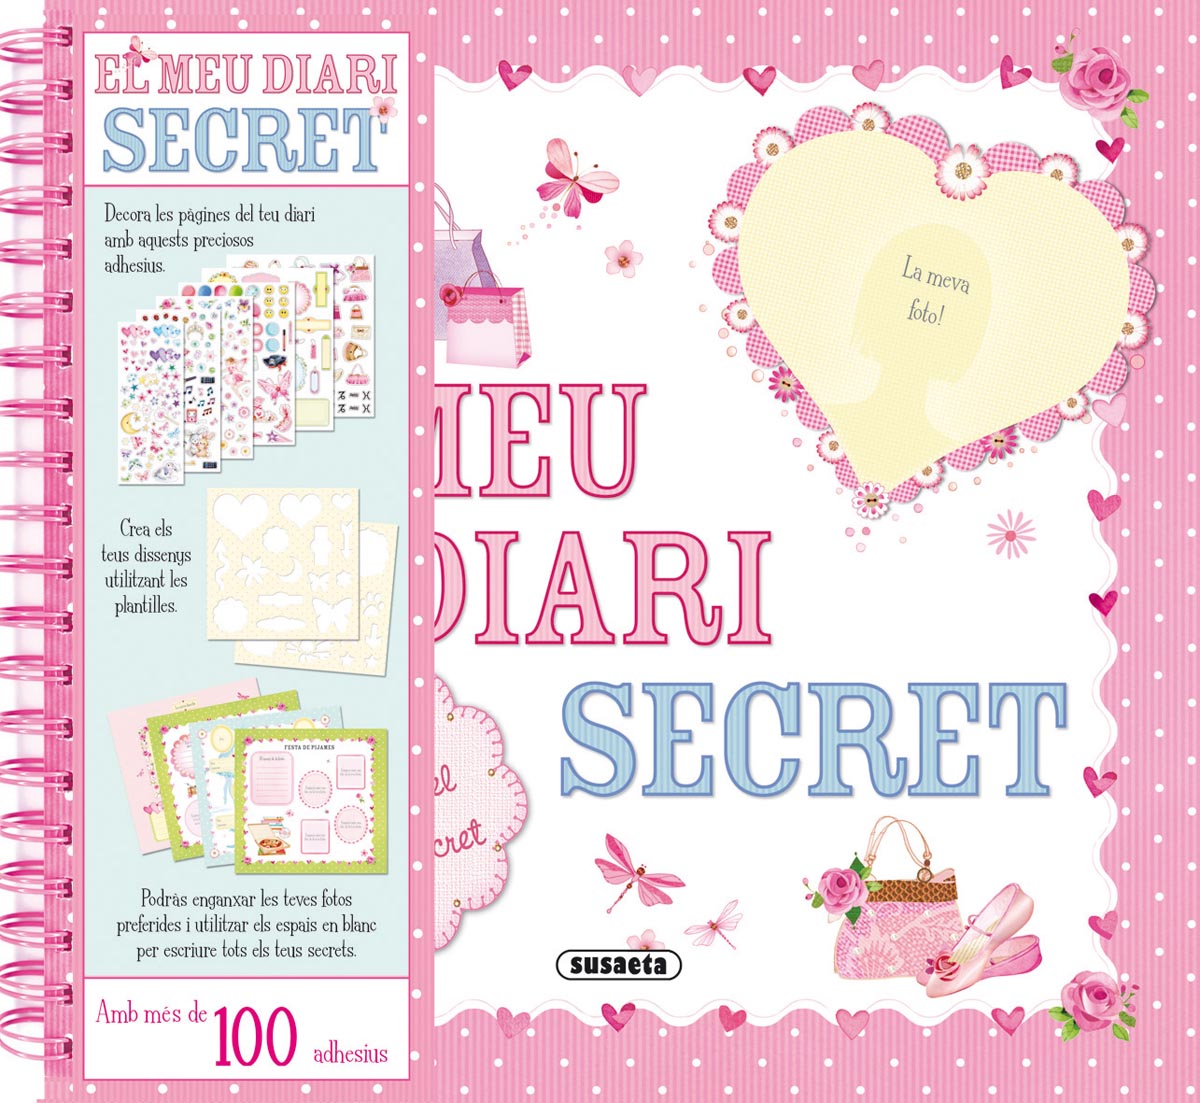 El meu diari secret